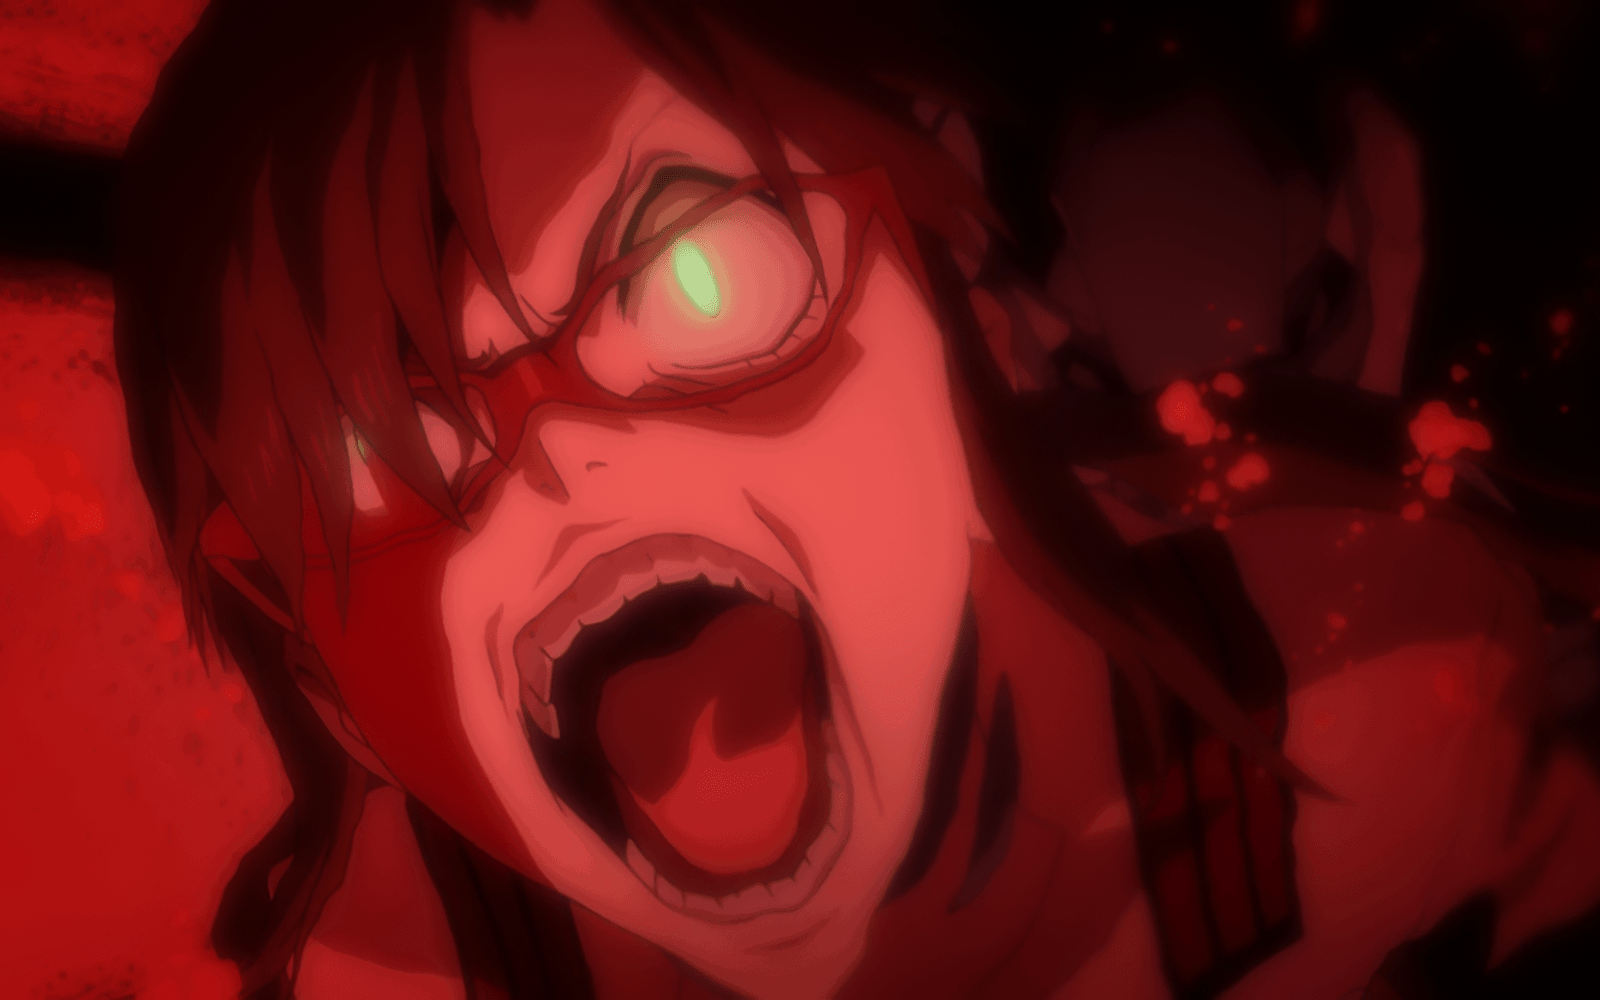 Evangelion: 2.0 - Mari Goes Berserk